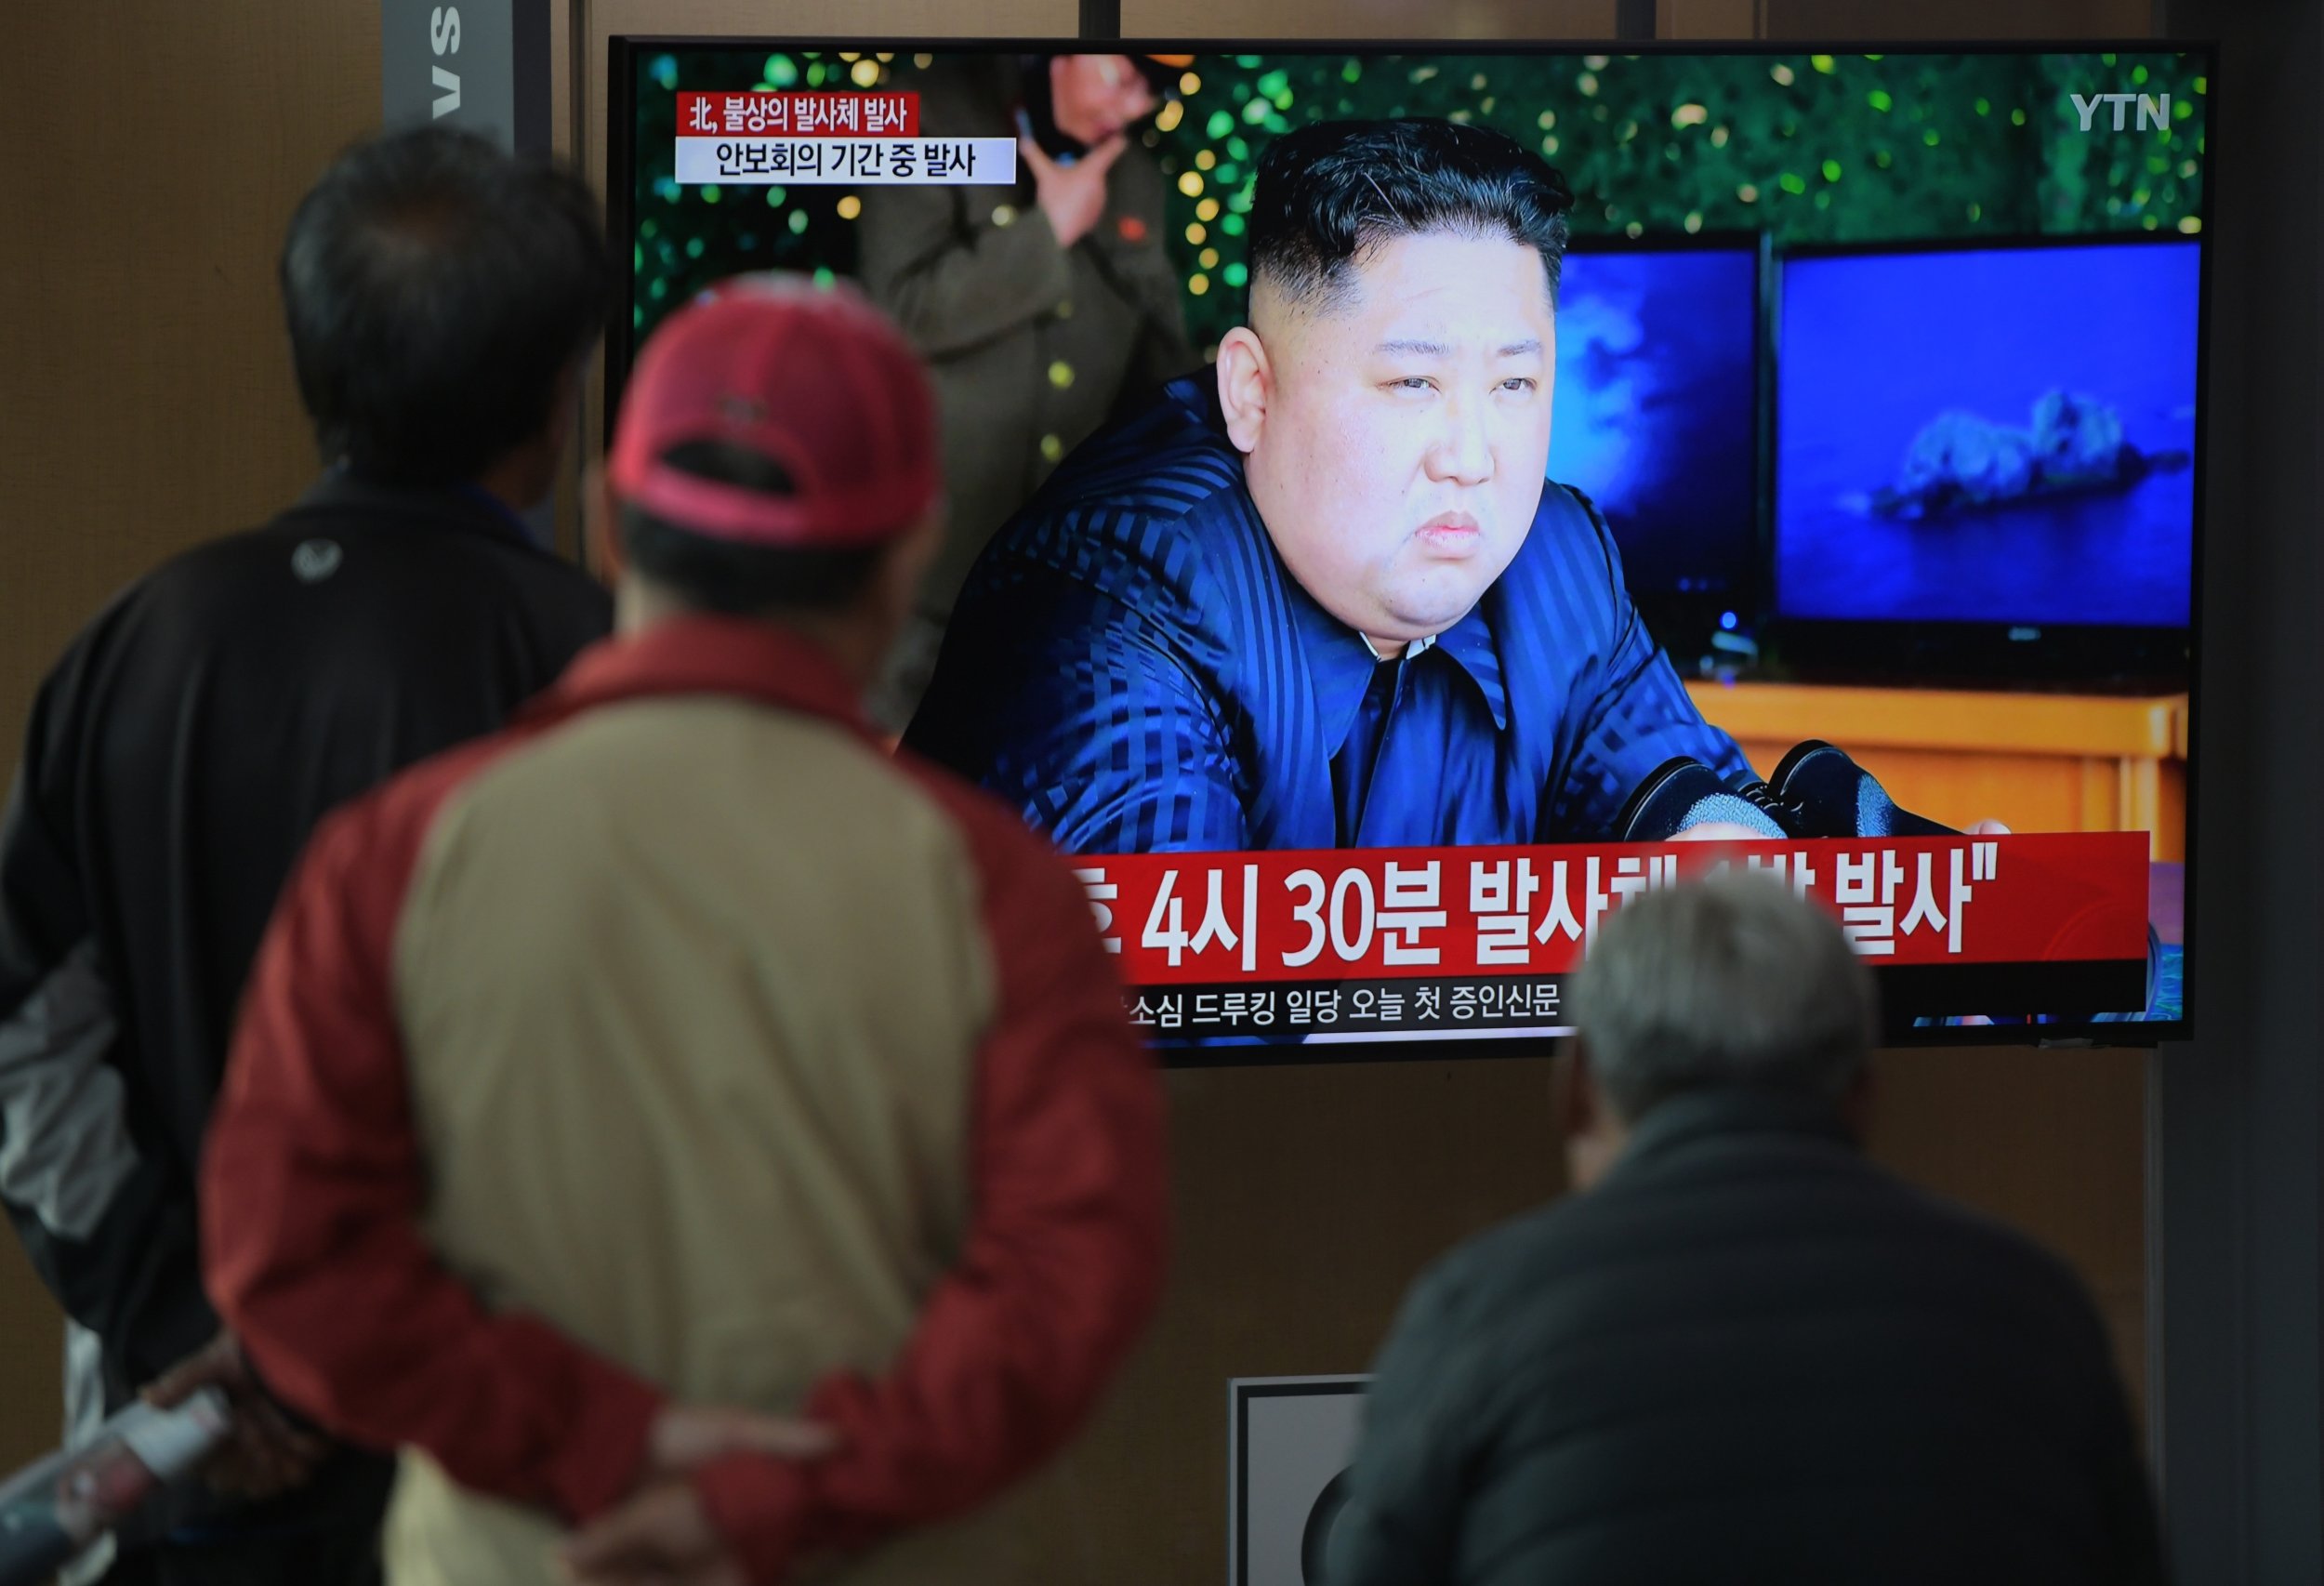 Kim Jong Un North Korea defectors